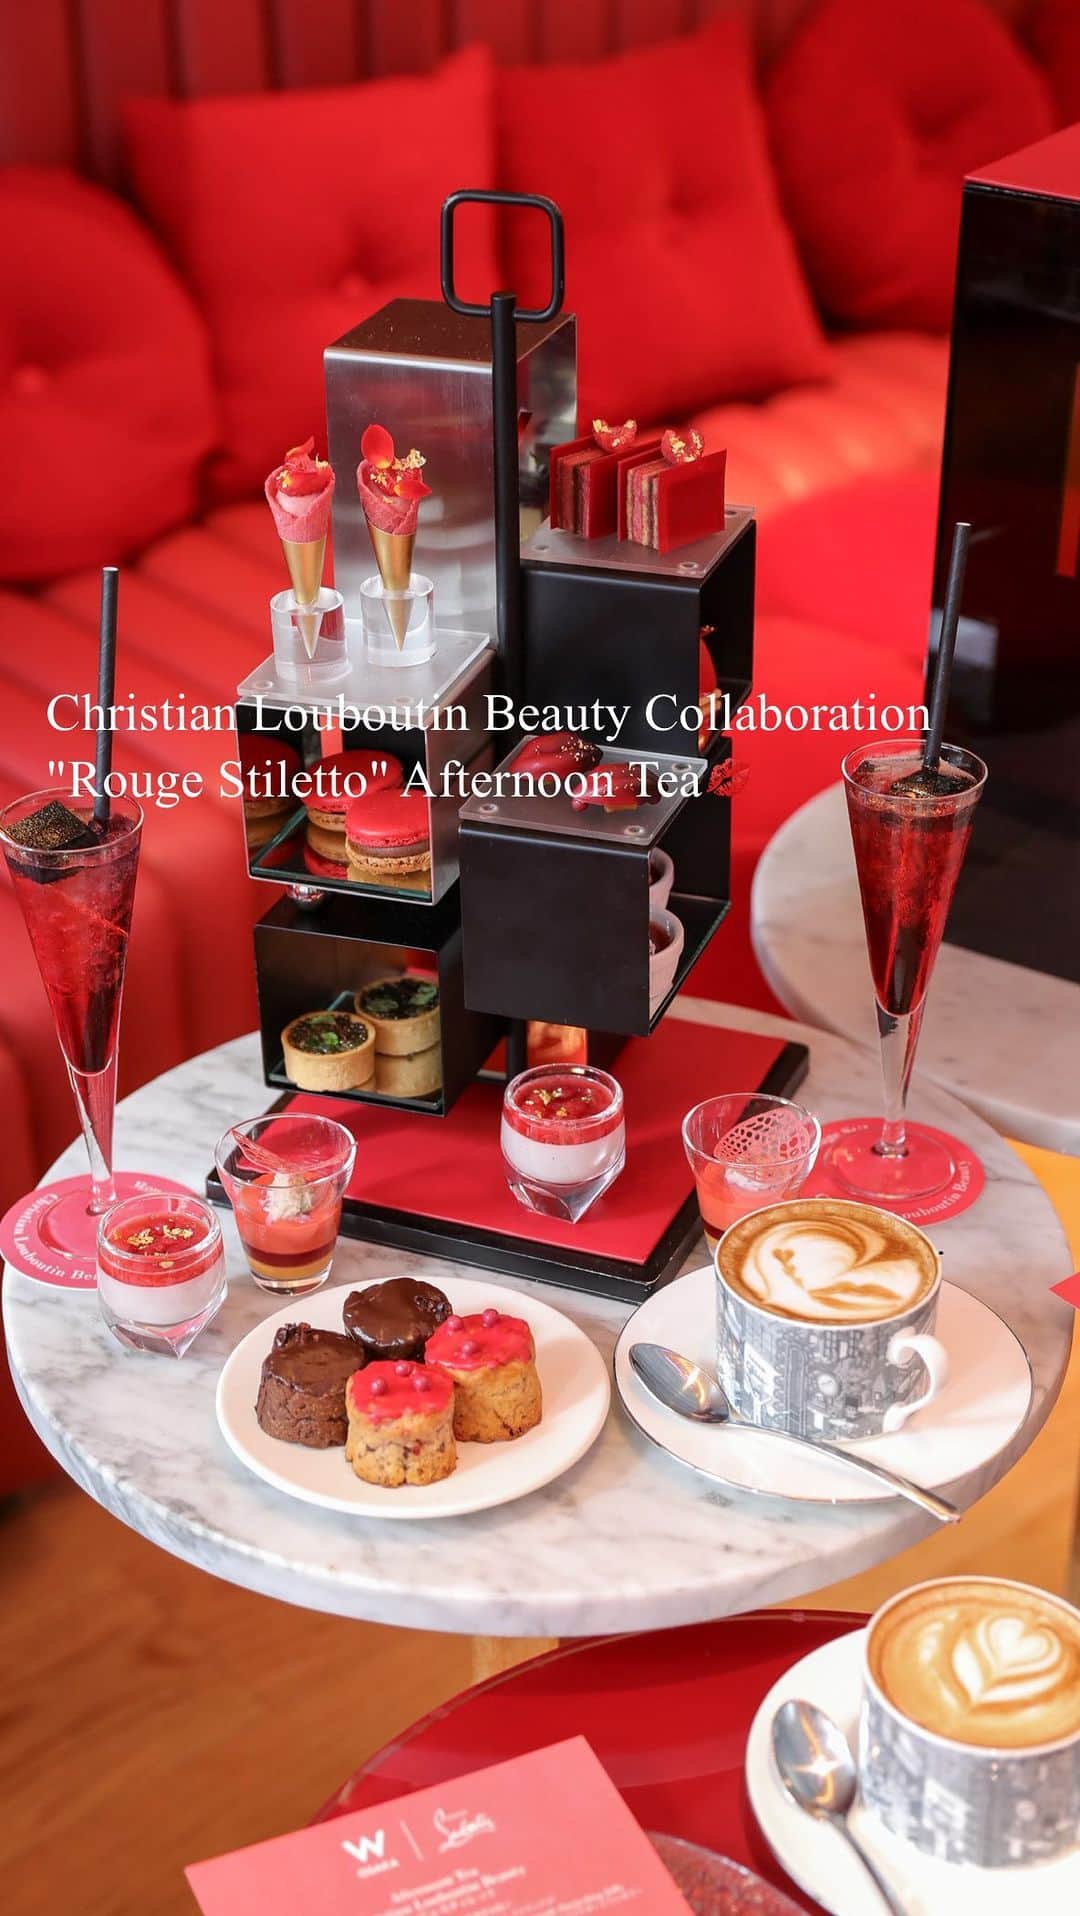 ASUKAのインスタグラム：「. Christian Louboutin Beauty Collaboration "Rouge Stiletto" Afternoon Tea👠  今年10月に発売された「ルージュスティレット」リップスティック。 キャバレーやダンサーから着想を得たエレガントでグラマラスな世界観をアフタヌーンティーでも表現してるよ✨  艶やかなウェルカムモクテル、ルブタンをイメージした赤いスイーツ達💋 セイボリー赤ワインに合うような大人っぽいアフタヌーンティーに仕上がってたよ🍷  💋 @mclaren720st   期間 2023年12月1日（金）～2024年1月31日（水） 場所 LIVING ROOM （3階） 時間 12:00～、14:30～、17:00～、19:30～（各90分制） TEL 06-6484-5812（レストラン予約） 料金 【アフタヌーンティーのみ】 お1人様 ¥8,000（税サ込） 【ルージュスティレット ルミマット ルージュルブタン 001L付き】 お1人様 ¥16,000（税サ込） ※数量限定プラン（予約先着順） ◆どちらのプランも"ルブタン ビューティ"のリップサンプル付き（数量限定）  #ルージュスティレットアフタヌーンティー #wosaka #W大阪 #christianlouboutin #louboutinbeauty #美容好き #コスメ好き」